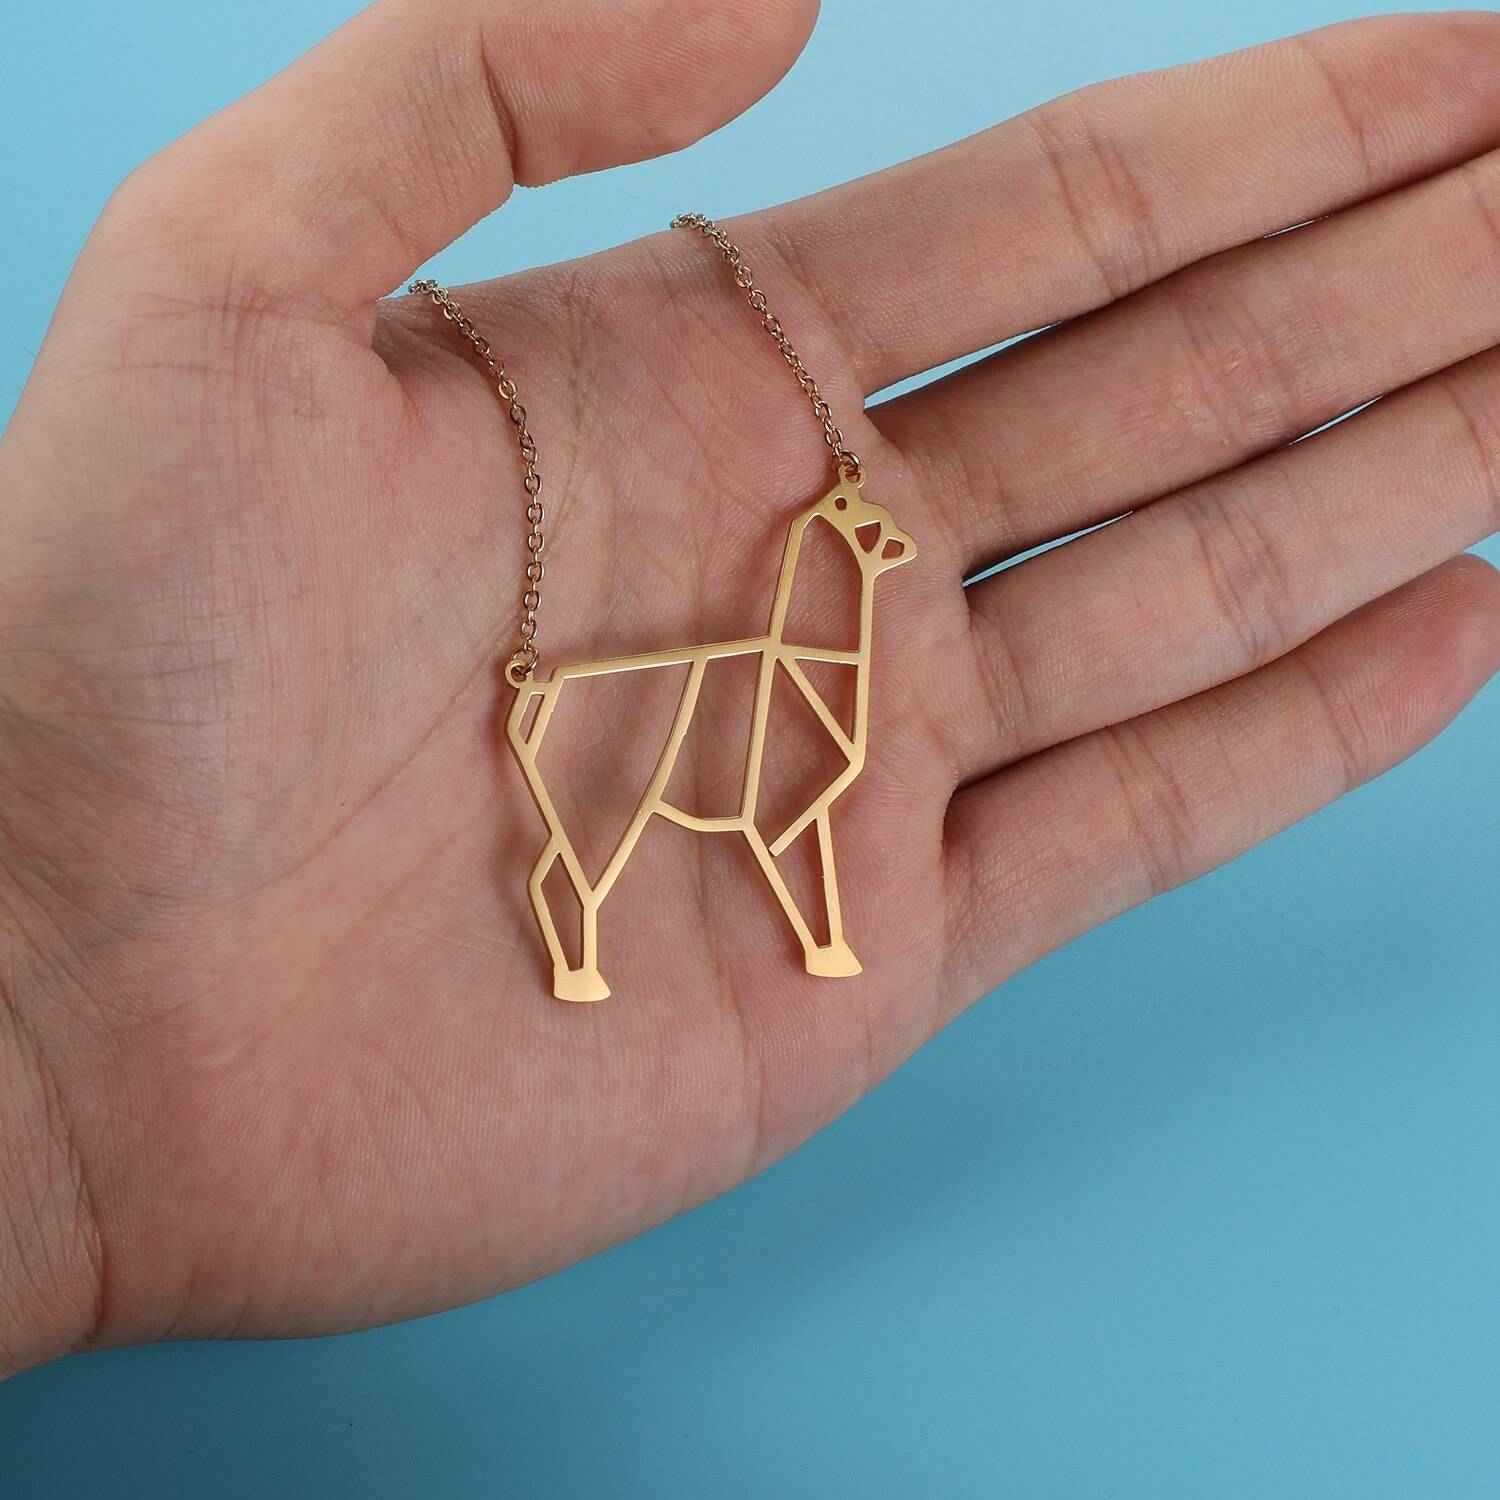 Gentle Alpaca Origami Necklace in hand